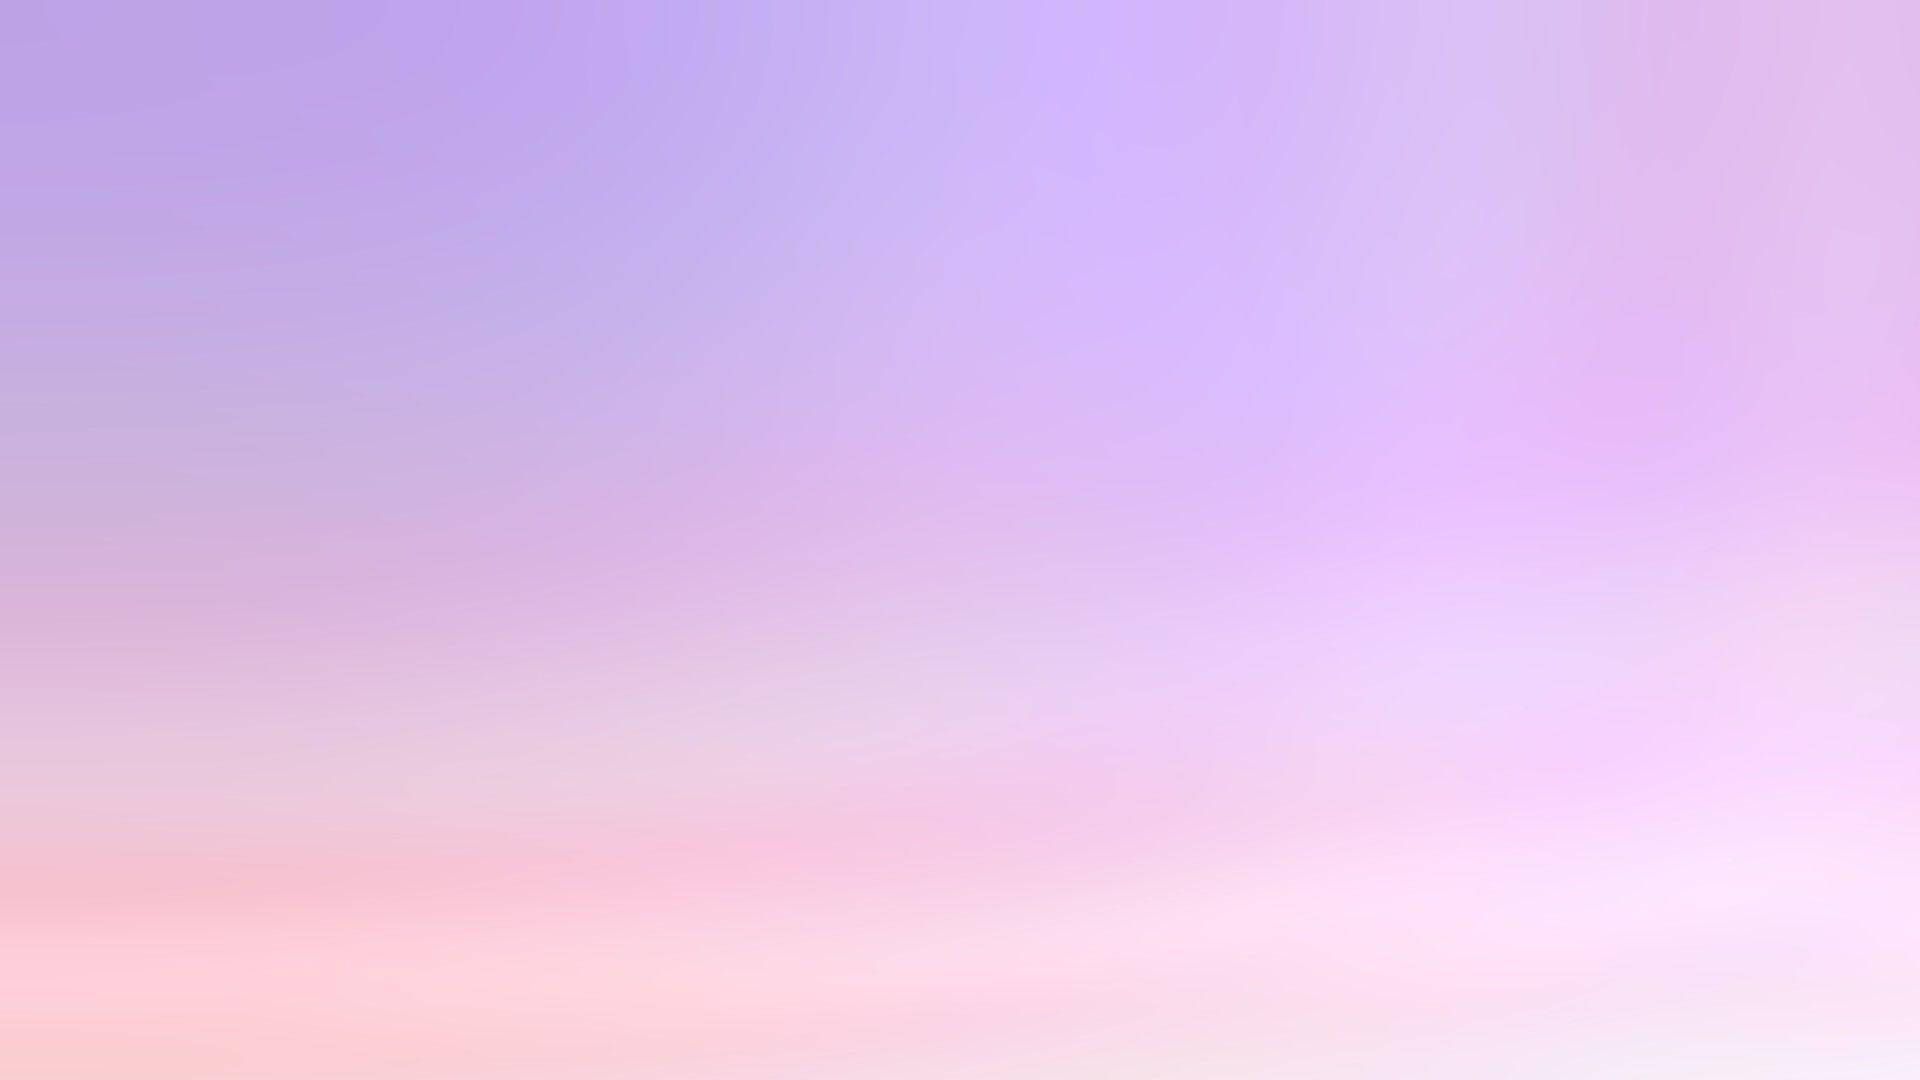  Farbverlauf Hintergrundbild 1920x1080. Downloaden Pinkund Lila Gradienten Pastell Ästhetisch Tumblr Laptop Wallpaper